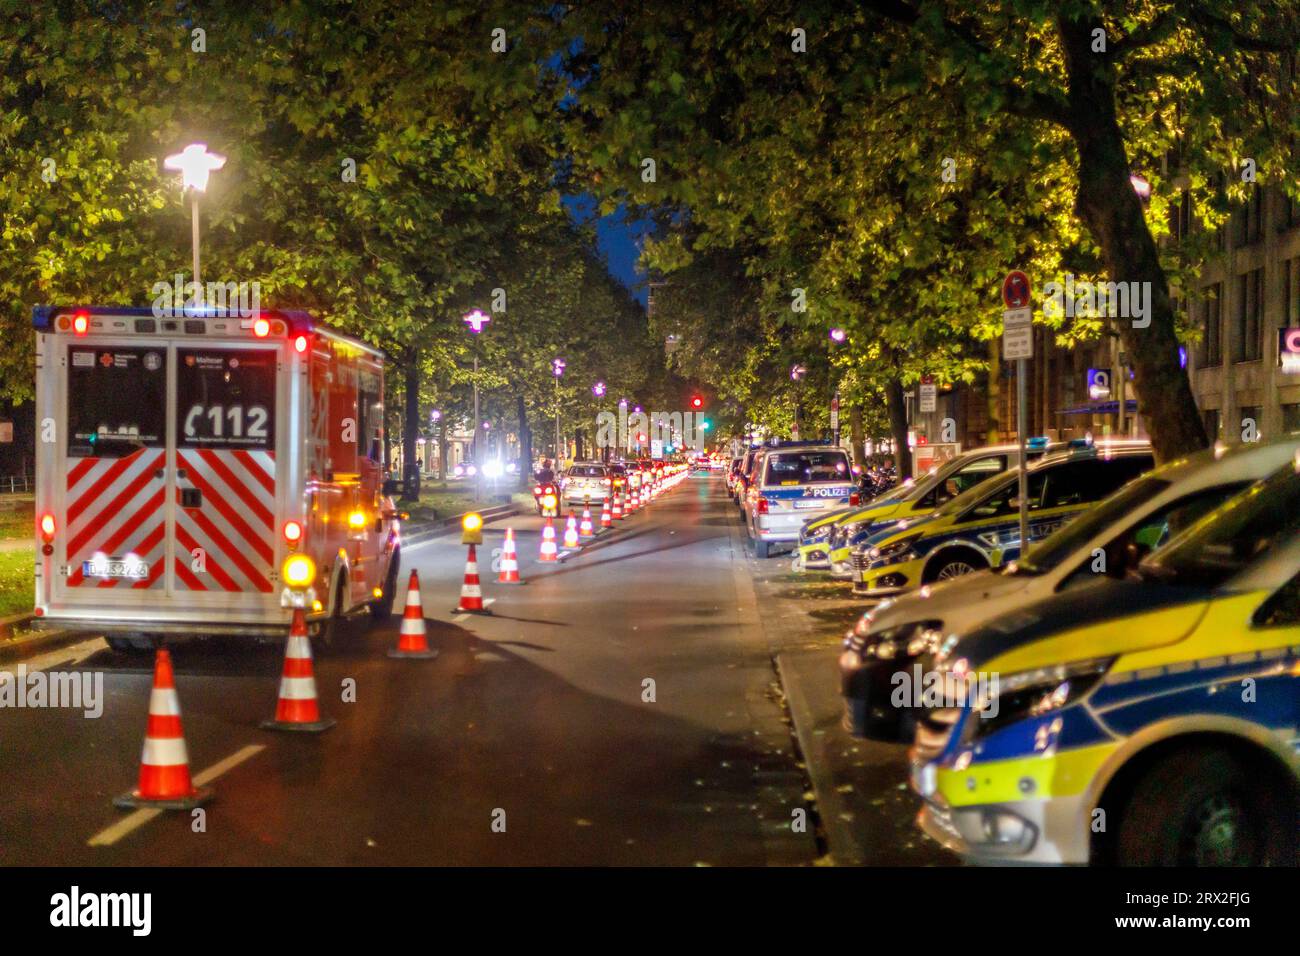 Sicherheitskonzept am Wochenende in der Düsseldorfer Altstadt, Absperrung für Einsatz- und Rettungsfahrzeuge Foto Stock